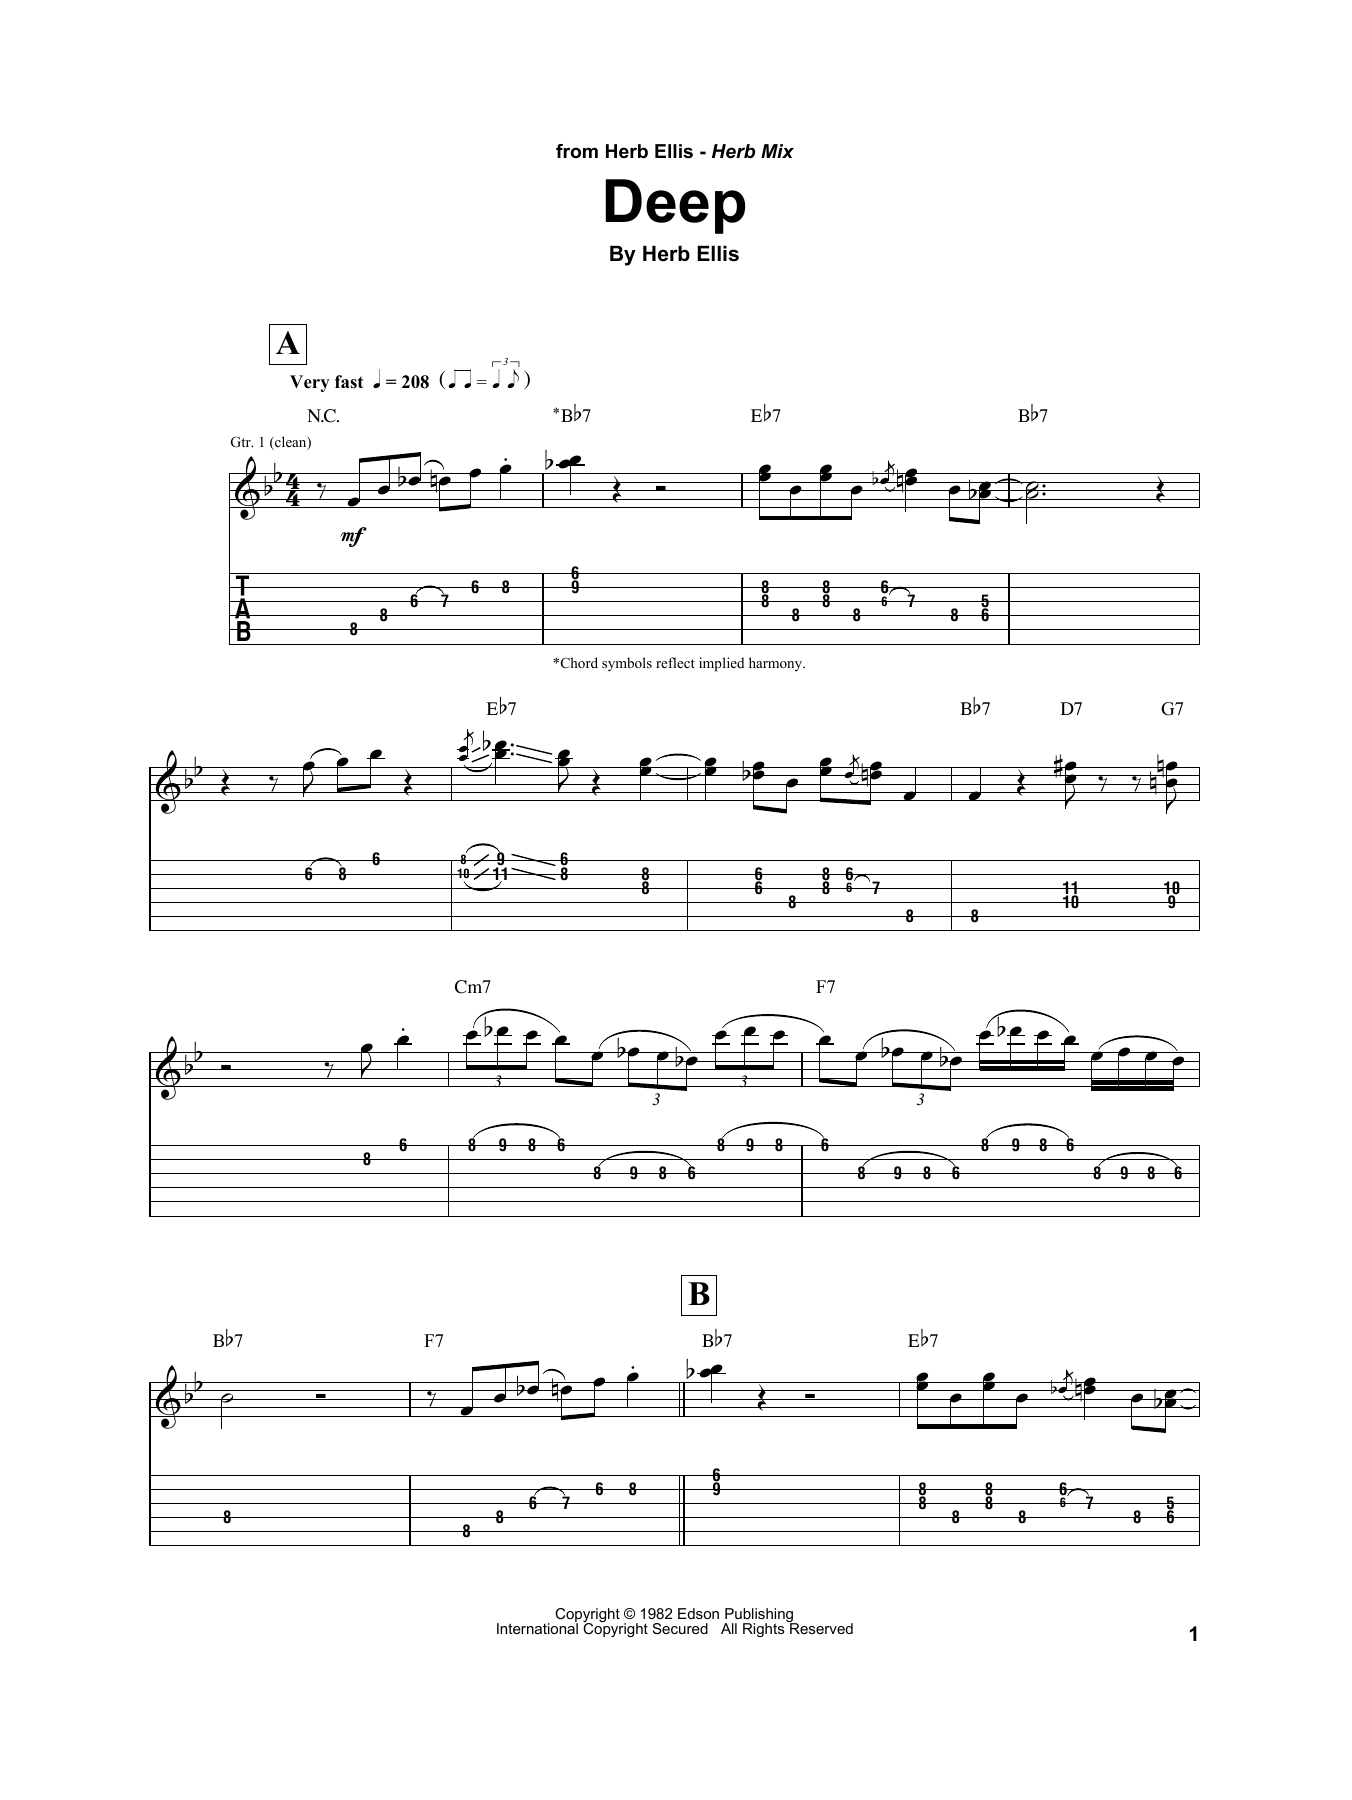 Herb Ellis Deep sheet music notes printable PDF score